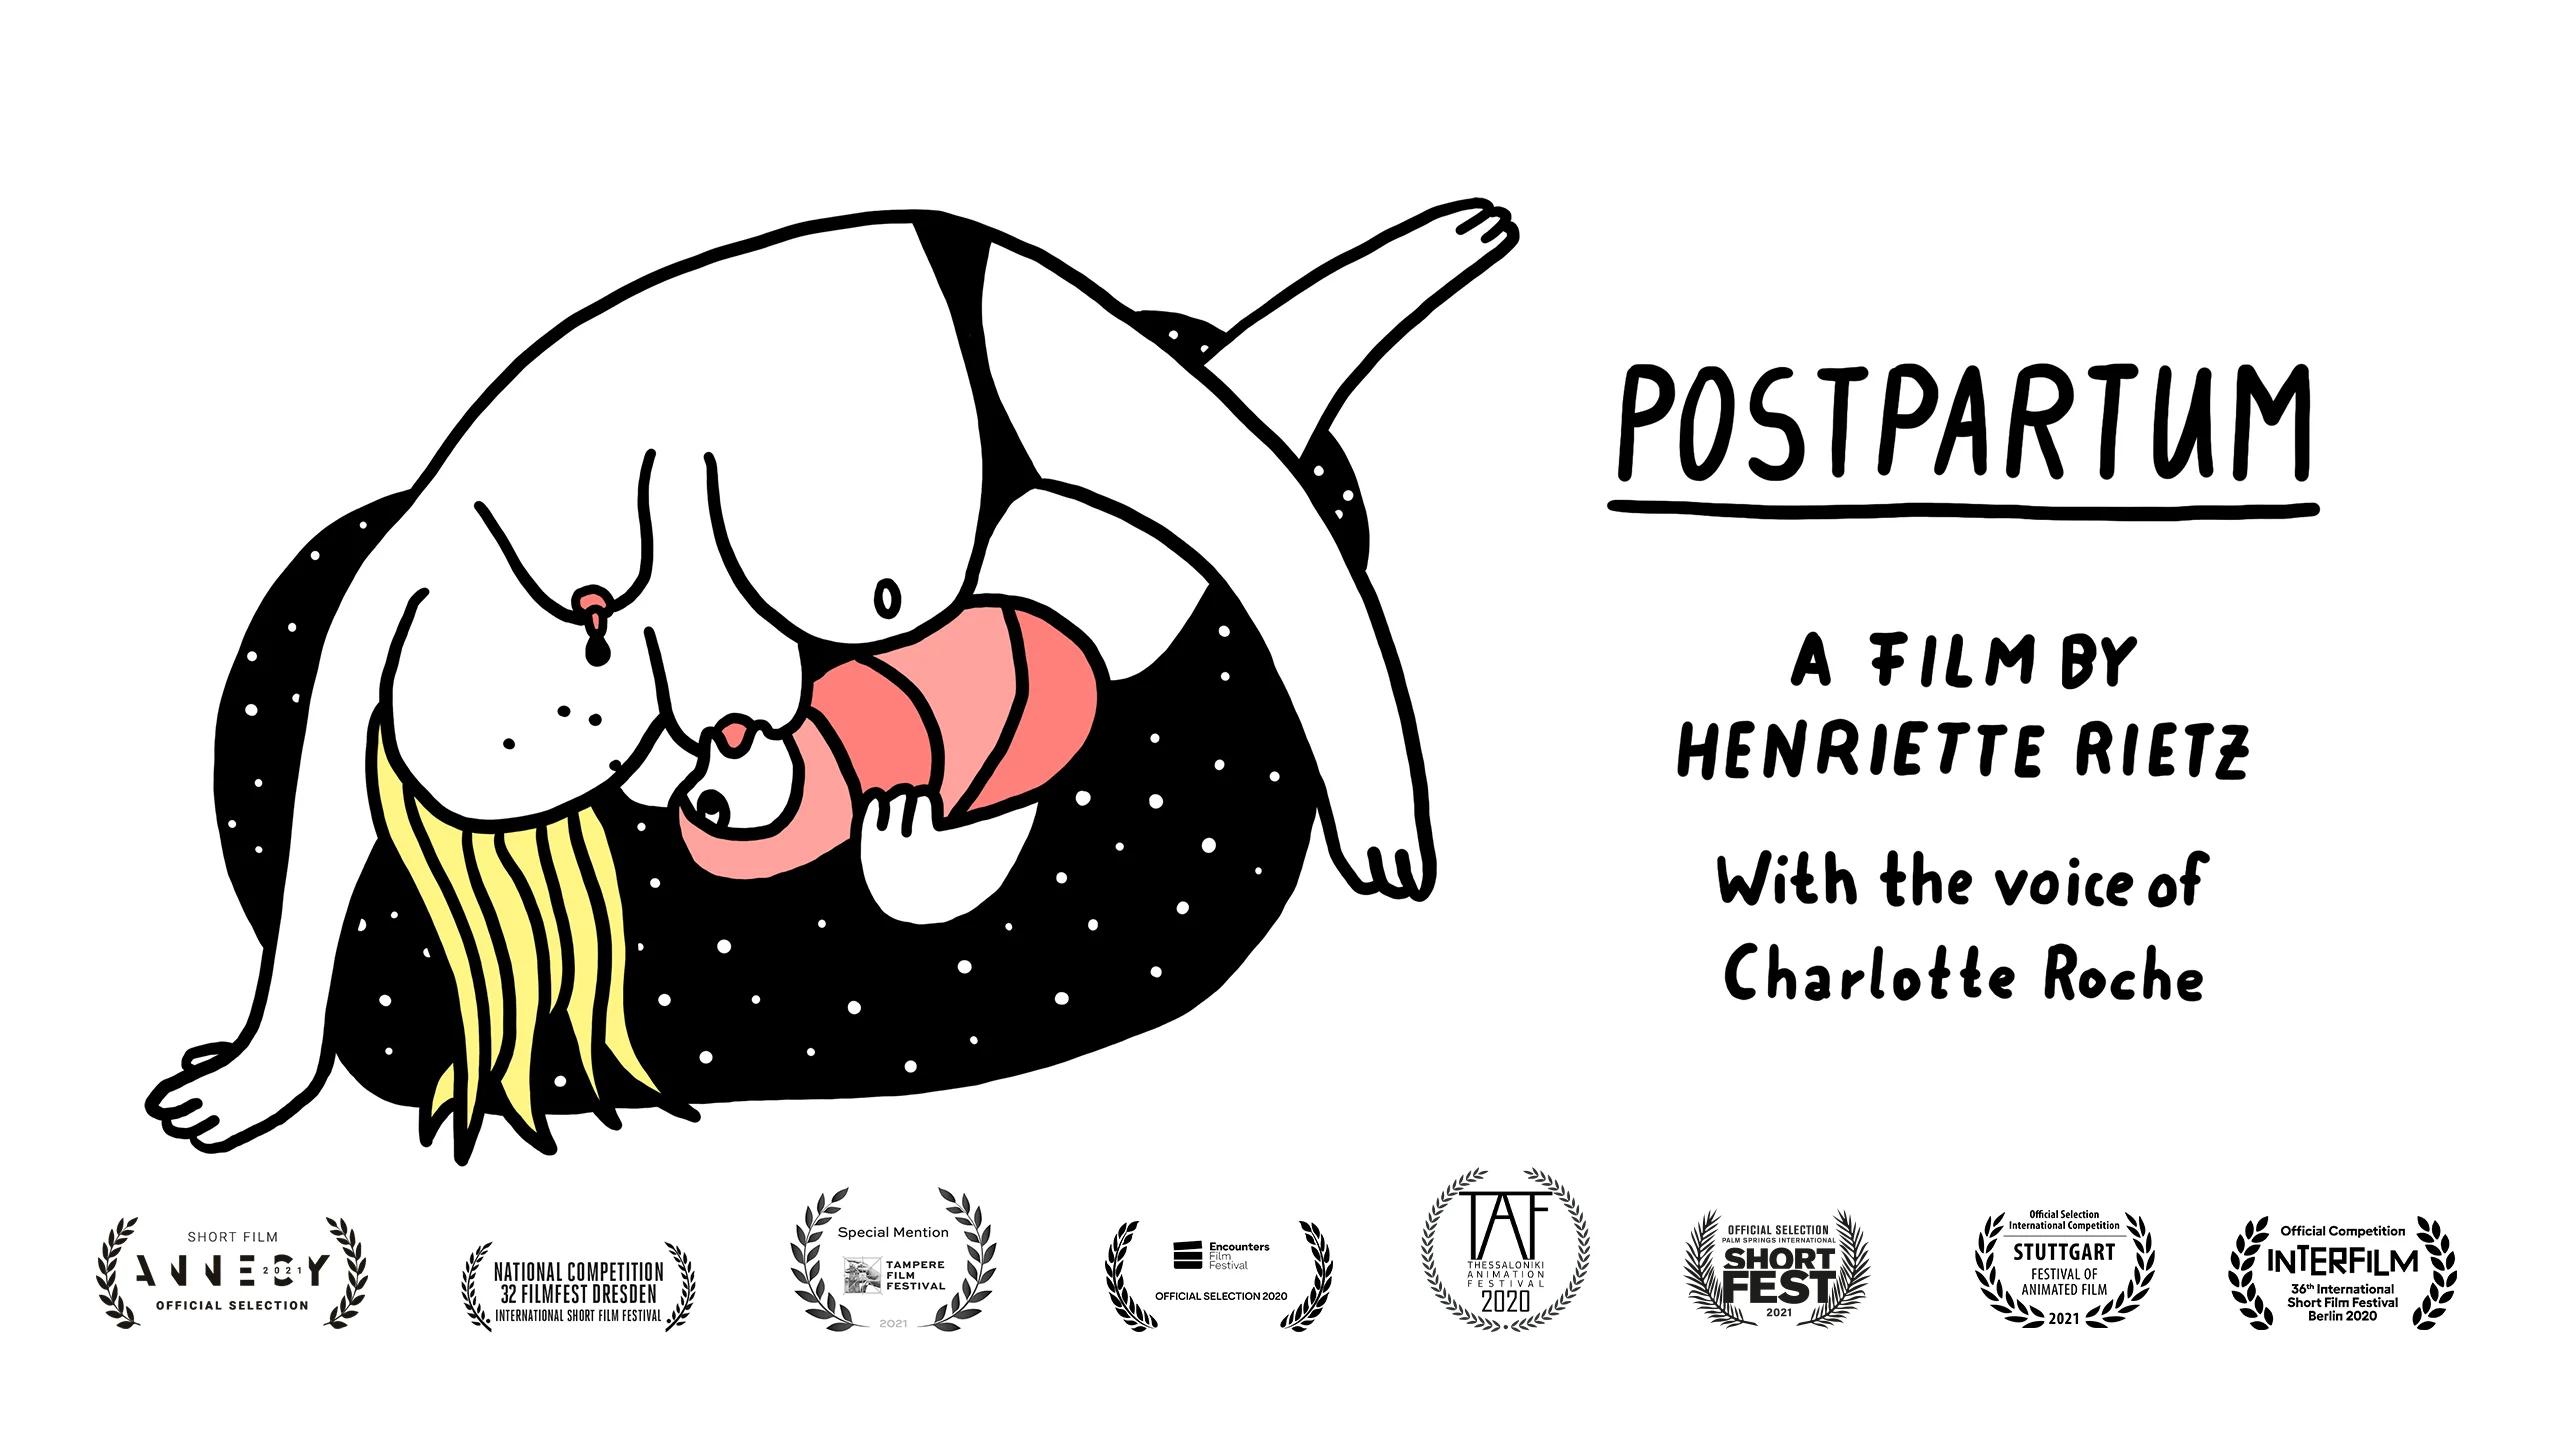 POSTPARTUM by Henriette Rietz on Vimeo [Video]